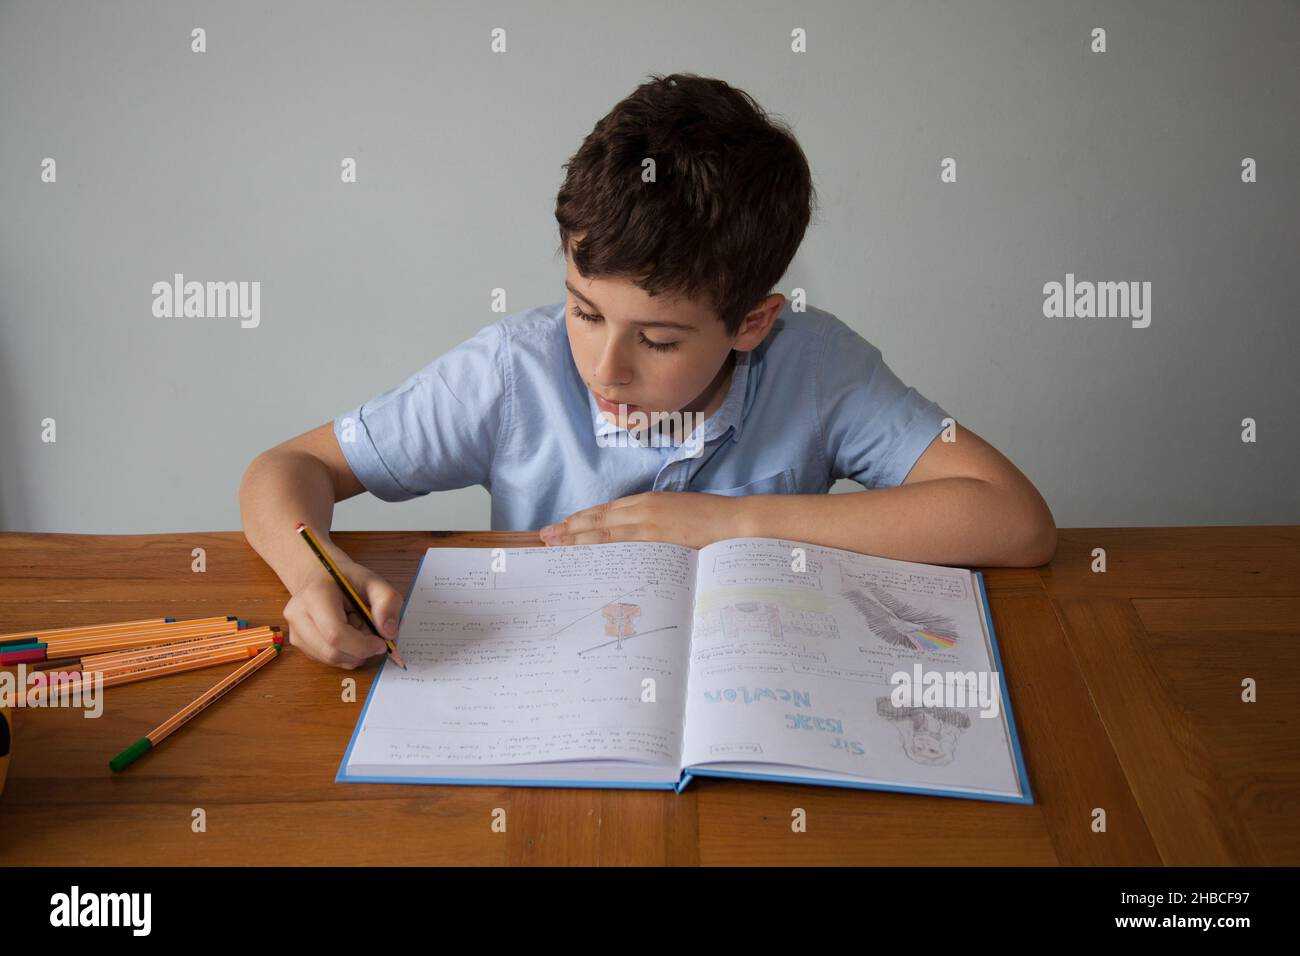 Un garçon d'école, âgé de 11 ans, faisant quelques devoirs avec un livre ouvert contenant des écrits et des dessins Banque D'Images